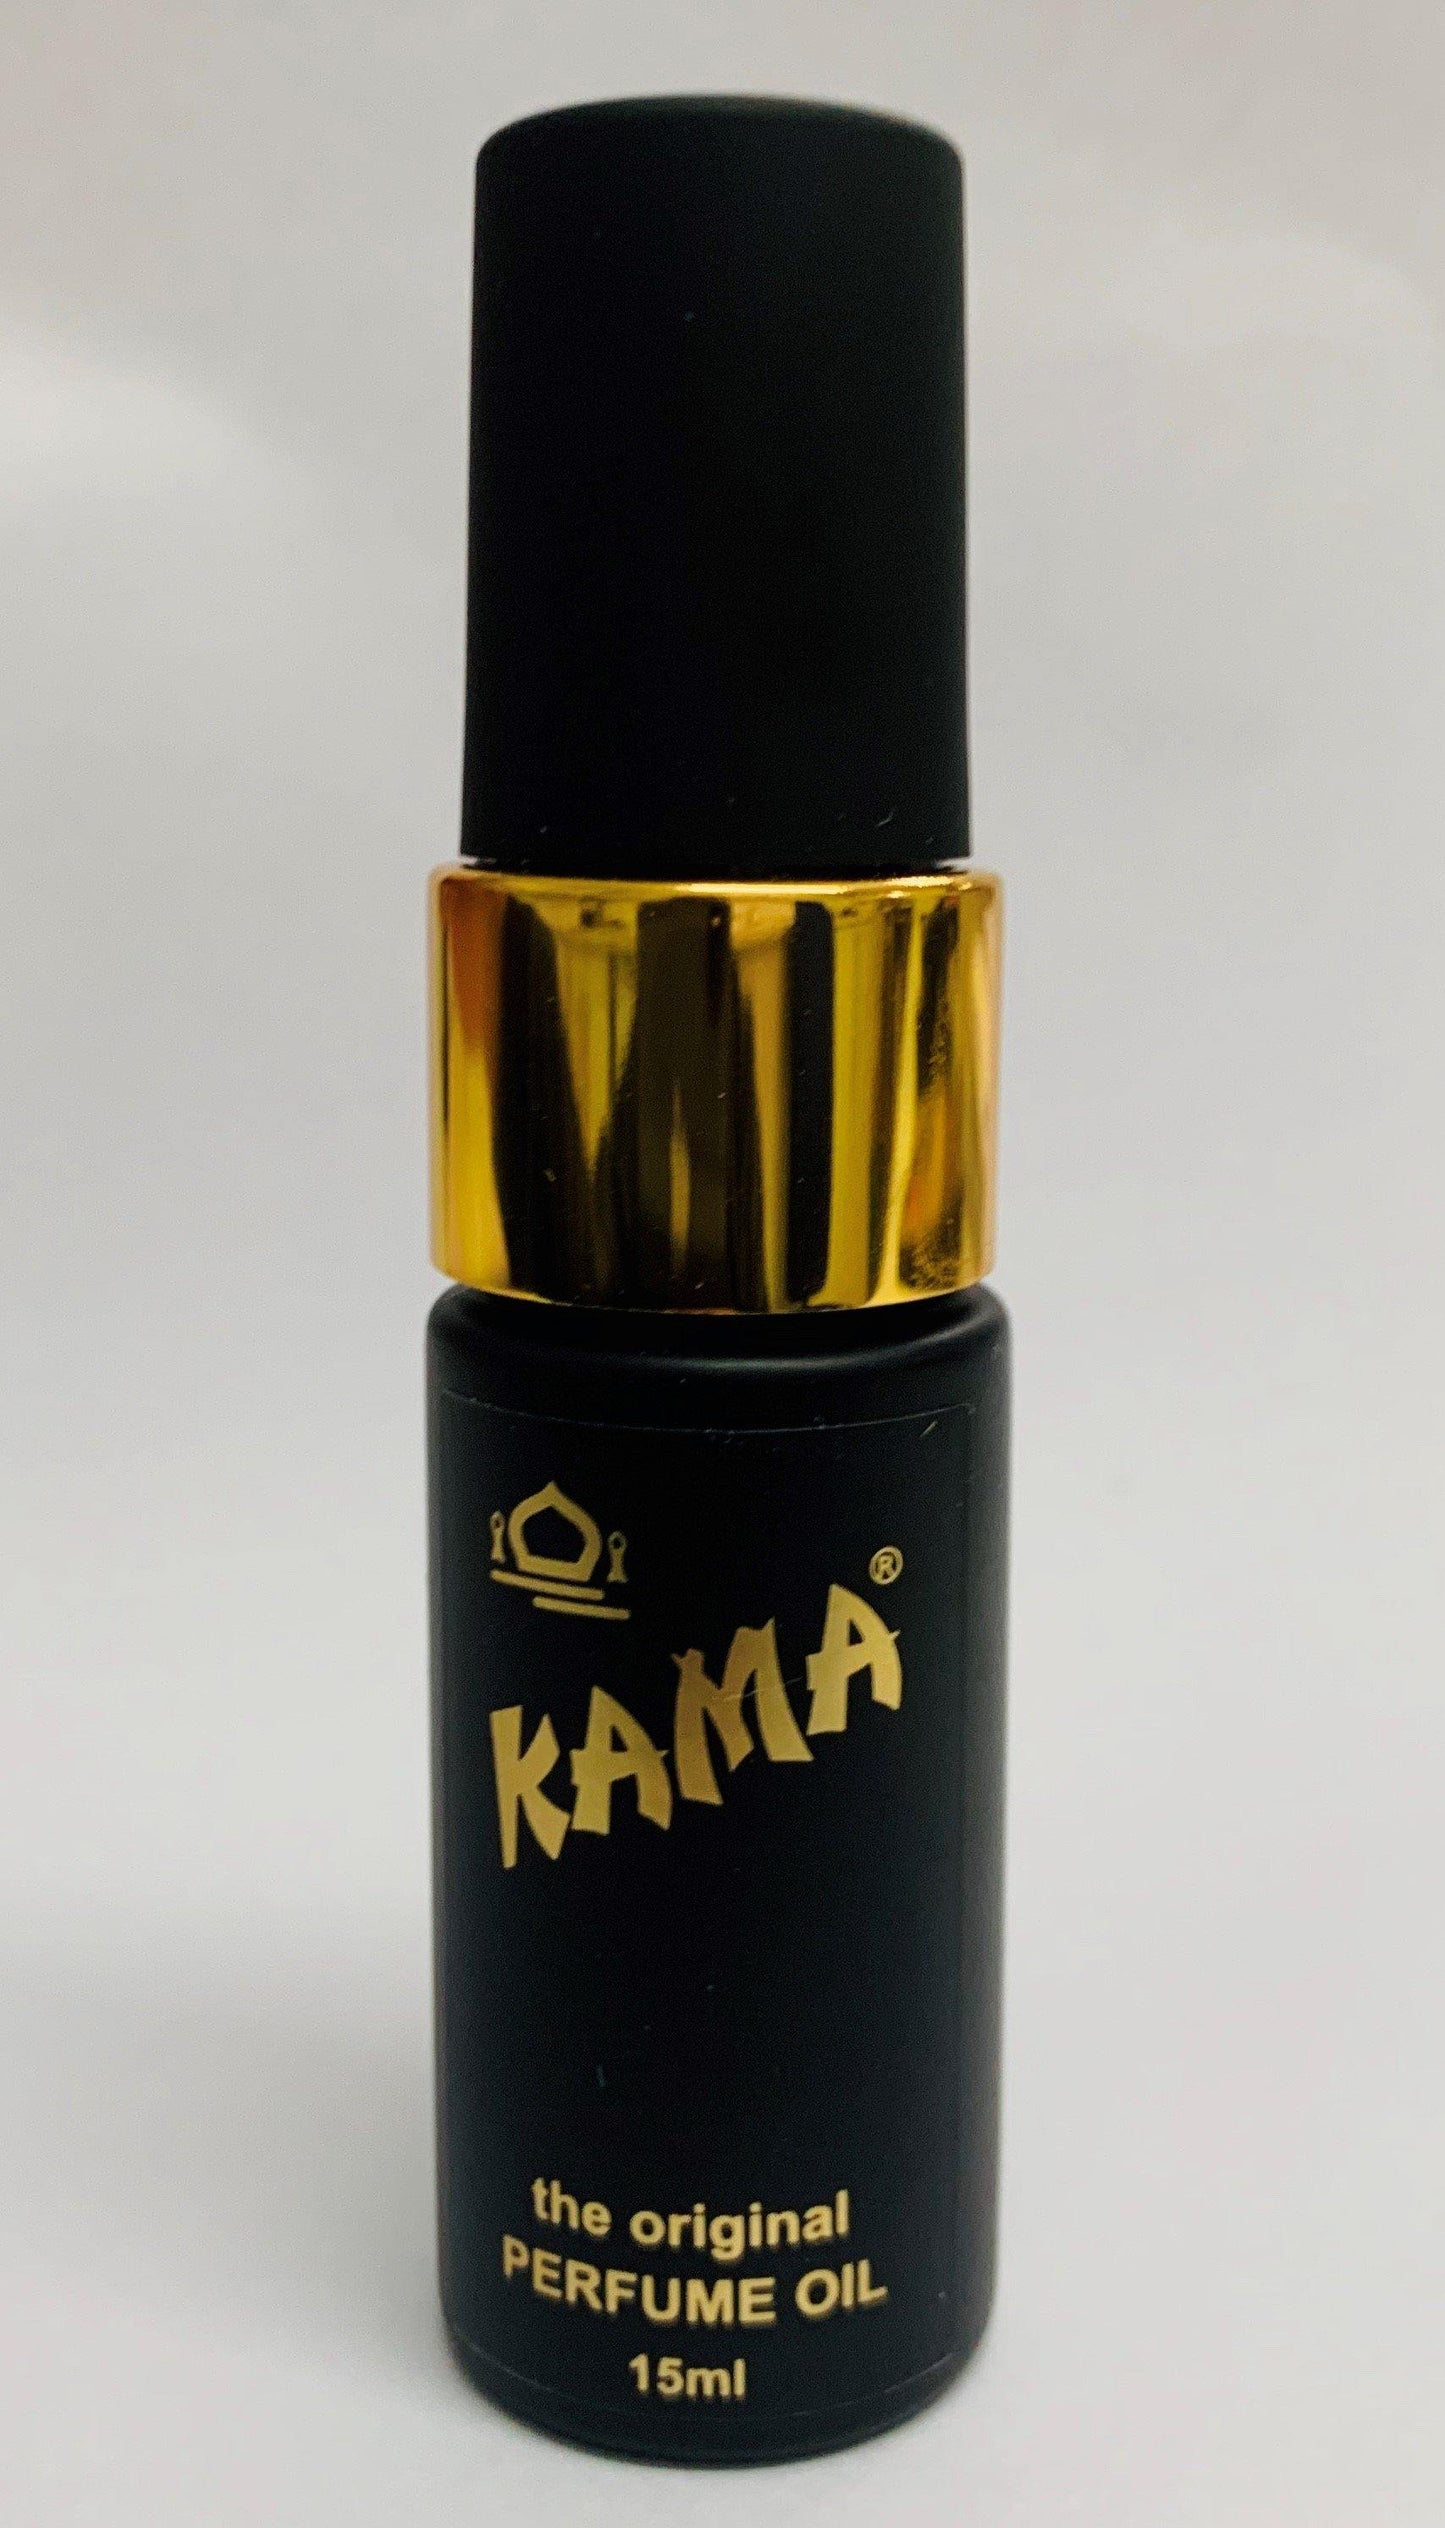 Kama The Original Perfume Oil Spray 15ml